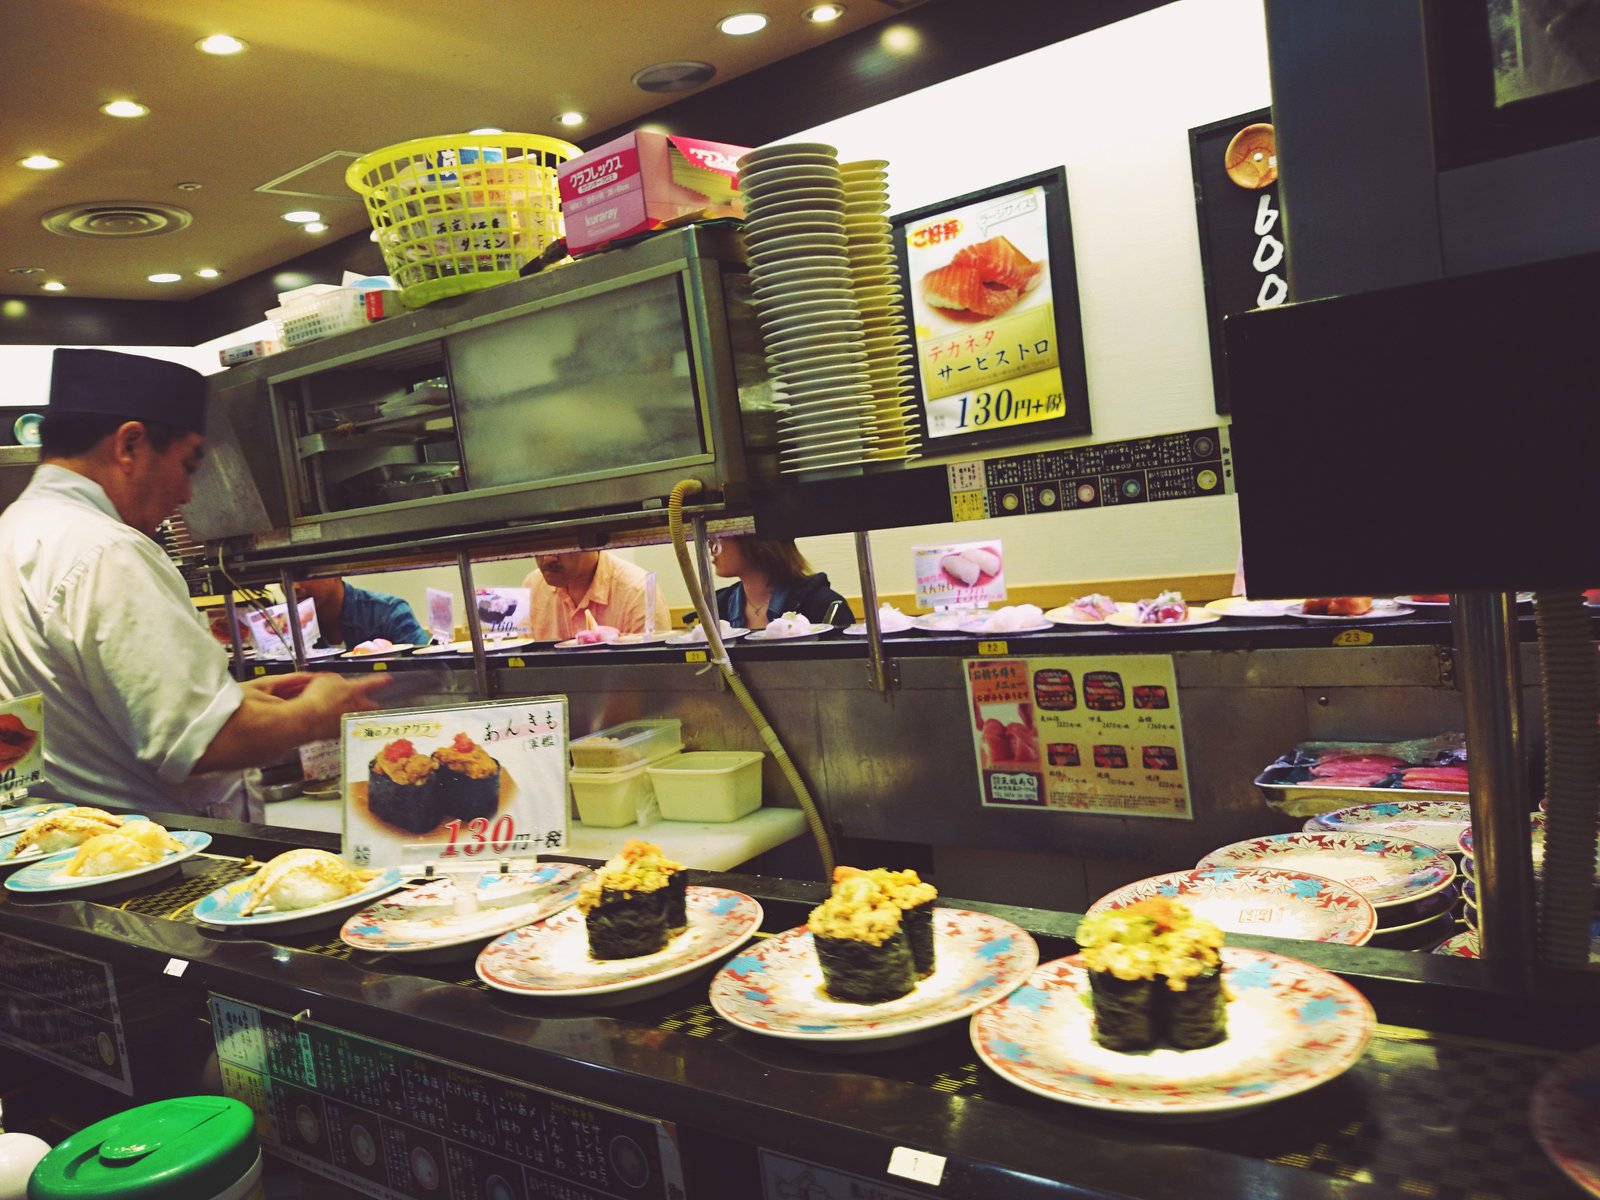 成田空港第2ターミナルで 安くて美味しい和食が食べたい時は回転寿司へ 一皿130円からok Playlife プレイライフ